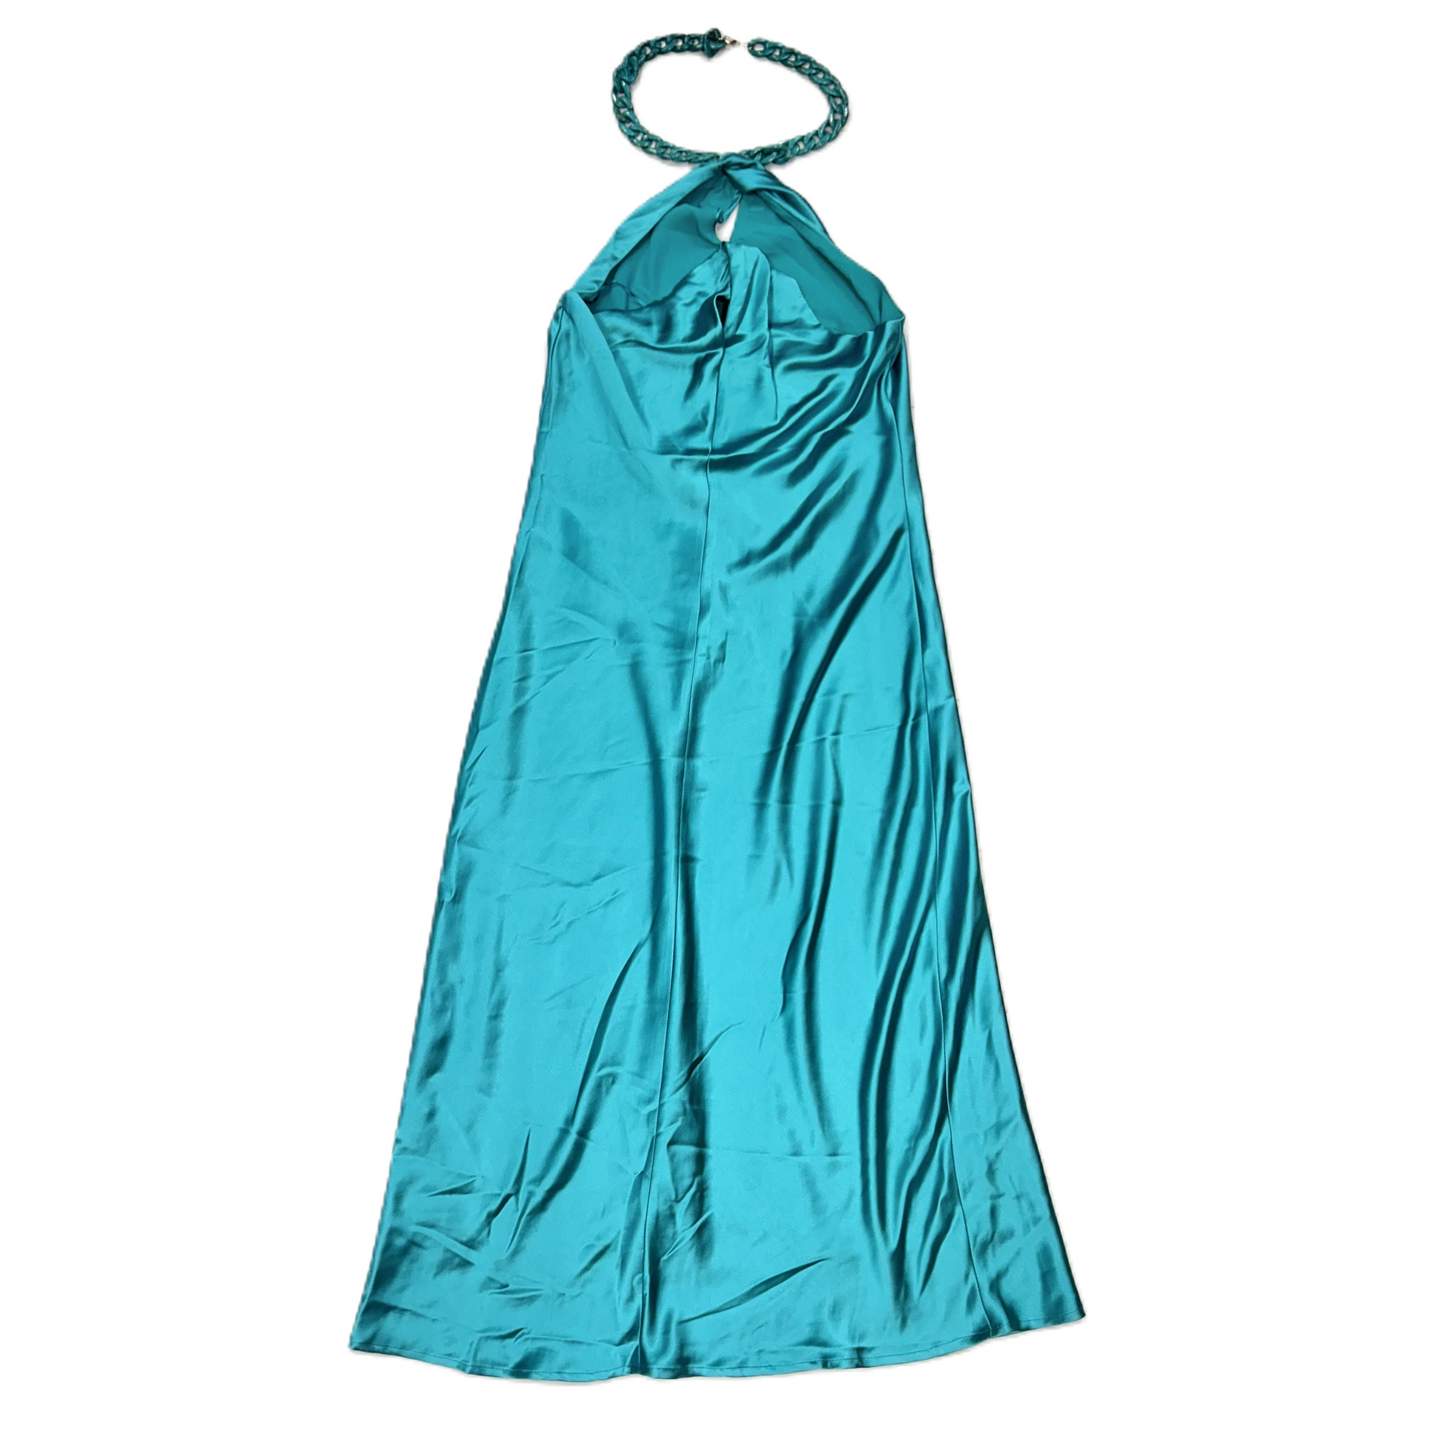 Blue Dress Designer By Jason Wu, Size: S